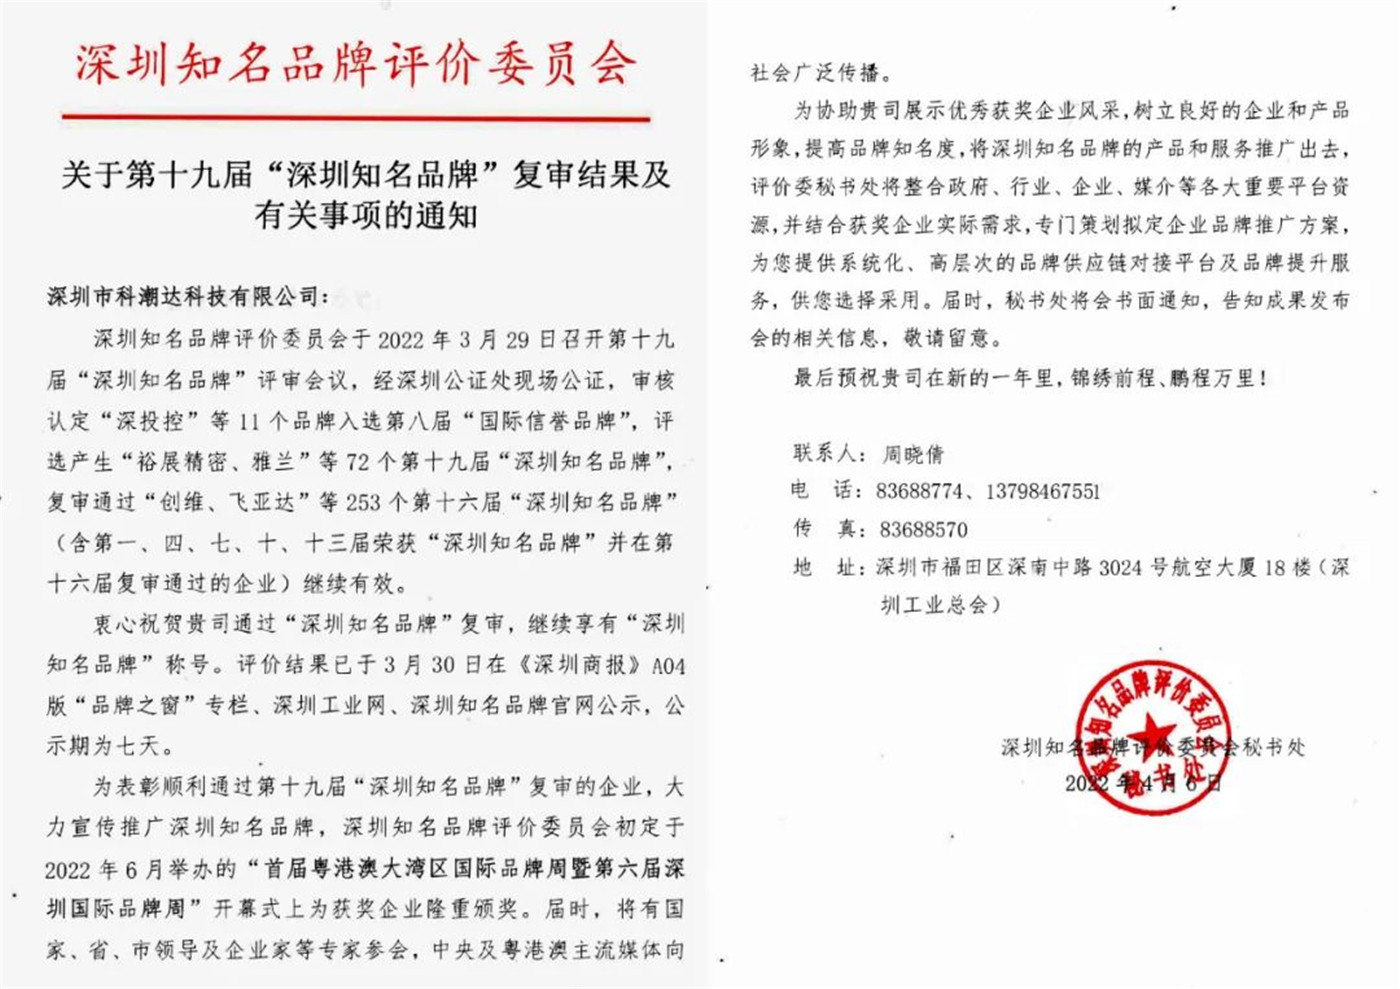 KECHAODA obitelji plima prolaza Shenzhen poznatih marki pregled!(1)